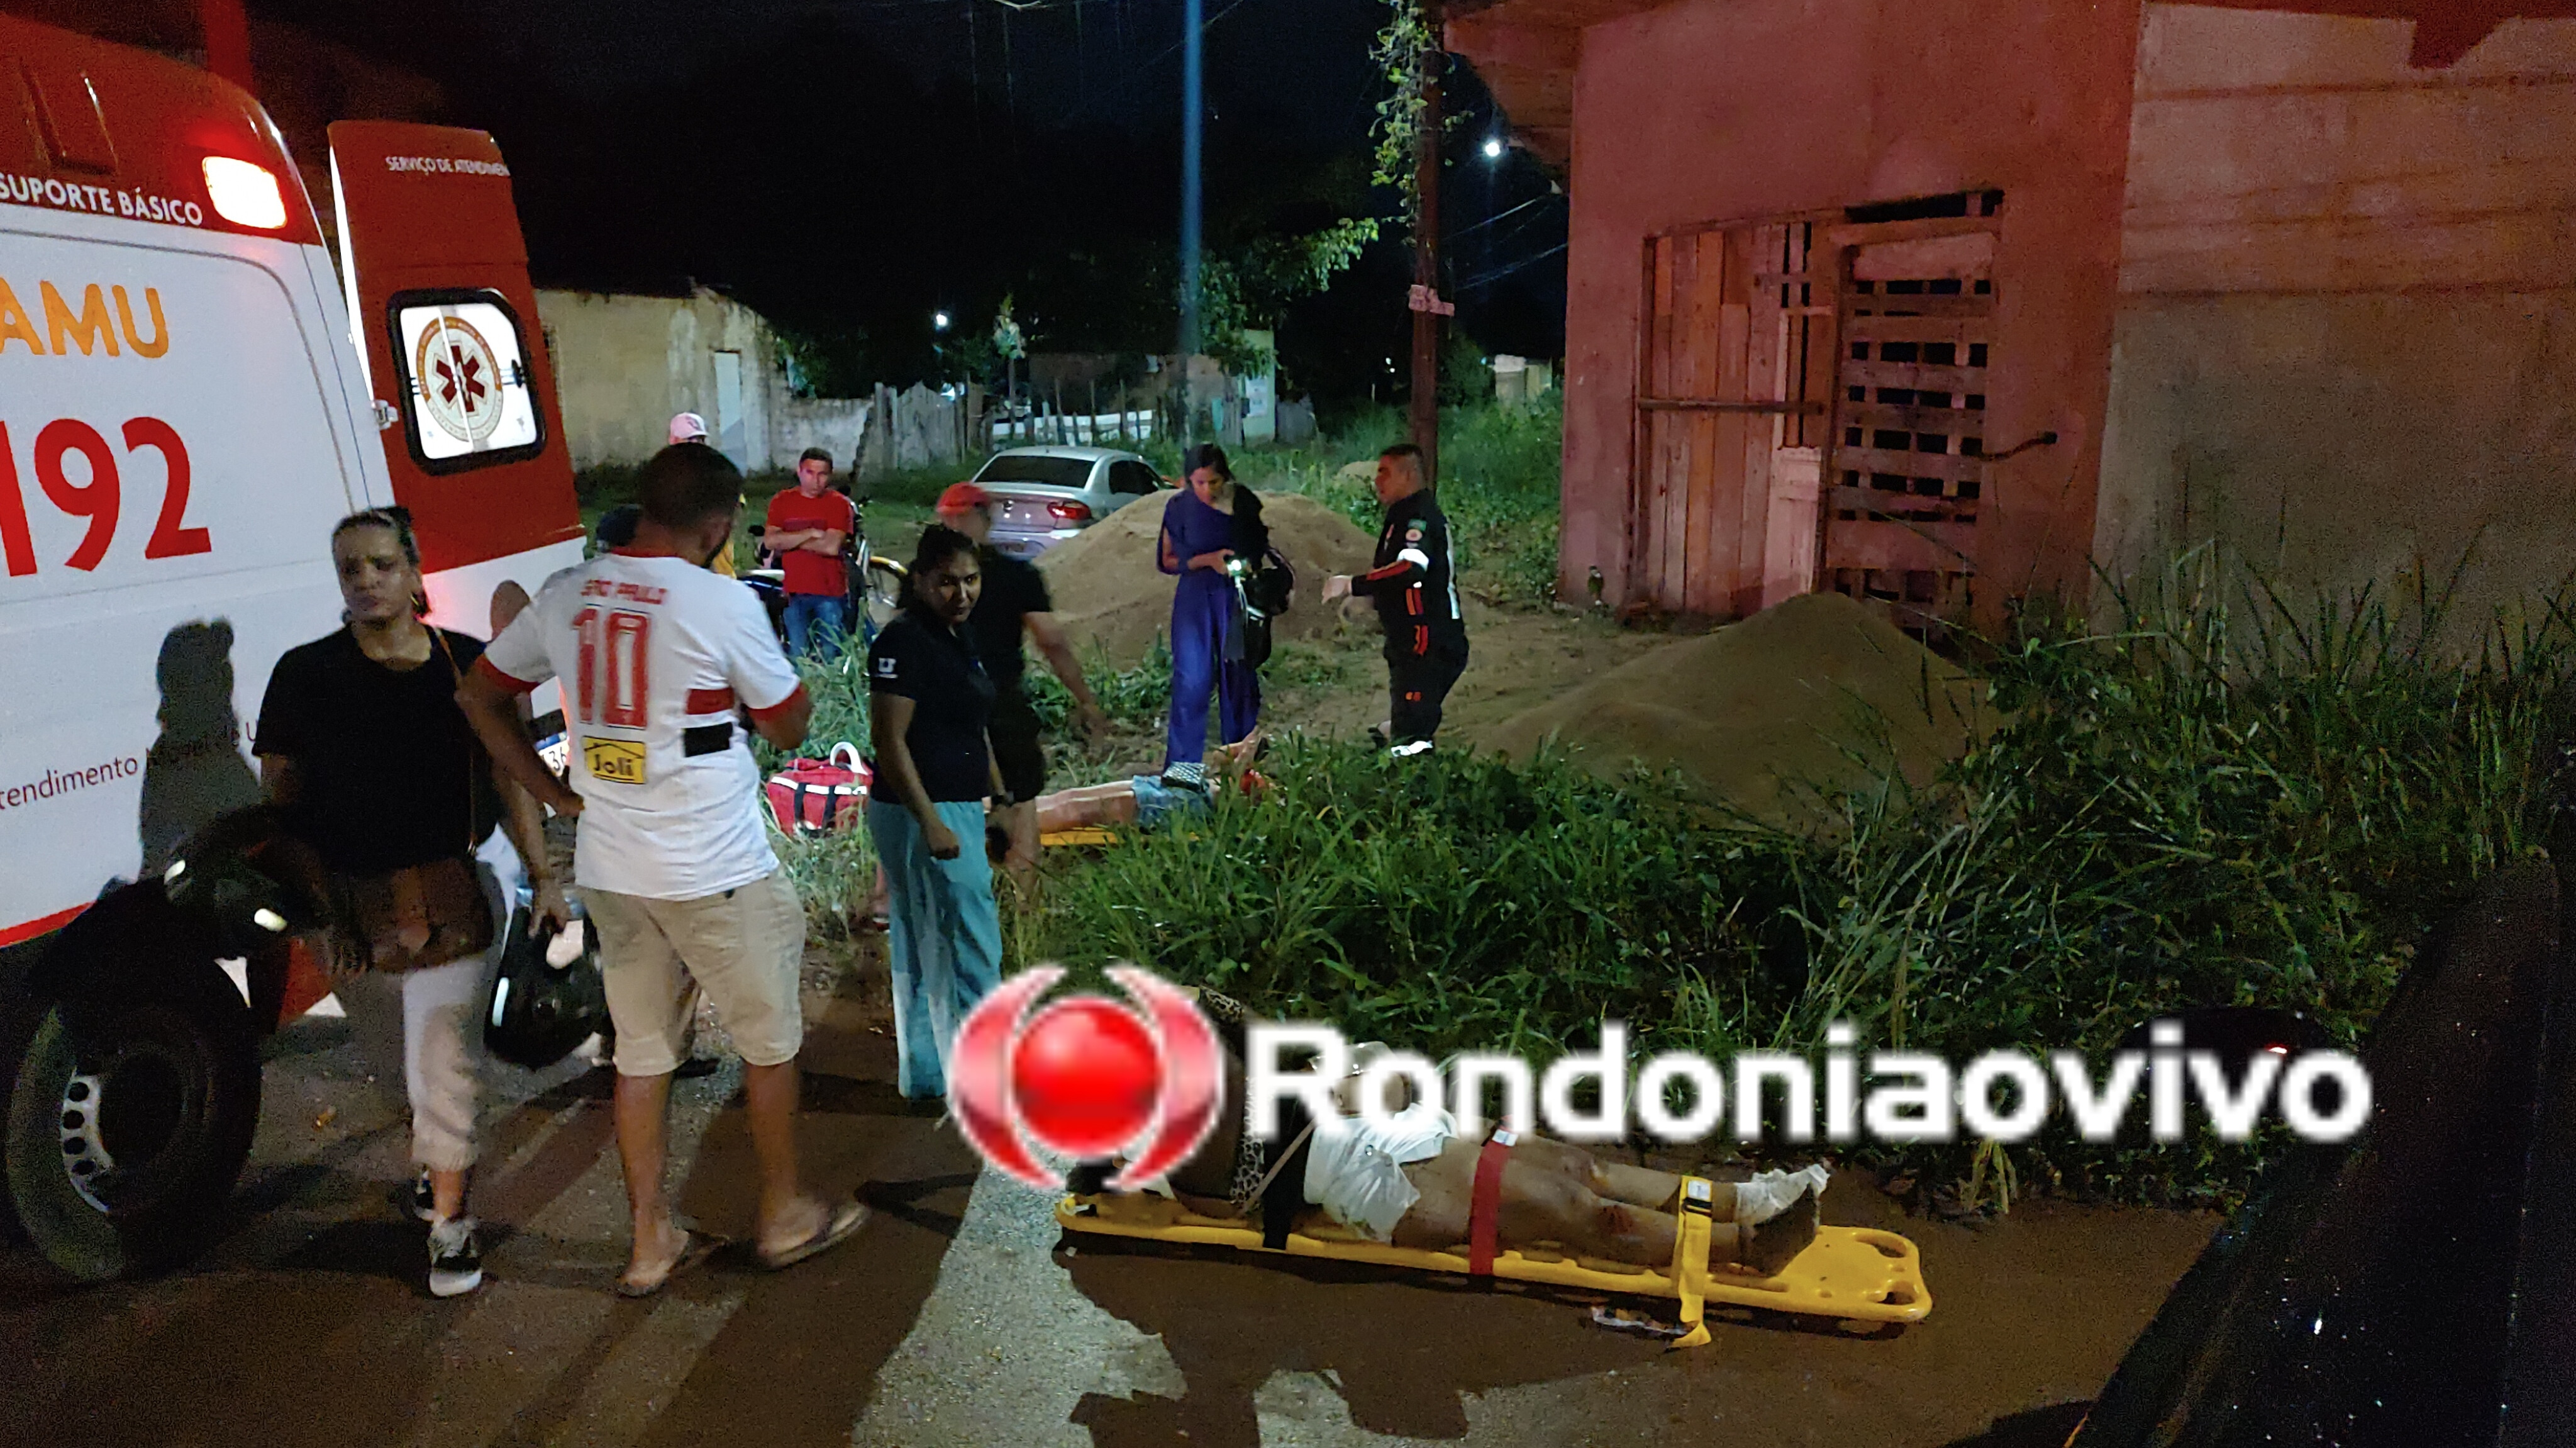 ATROPELADAS: Duas mulheres ficam feridas após grave acidente na Vila Mariana